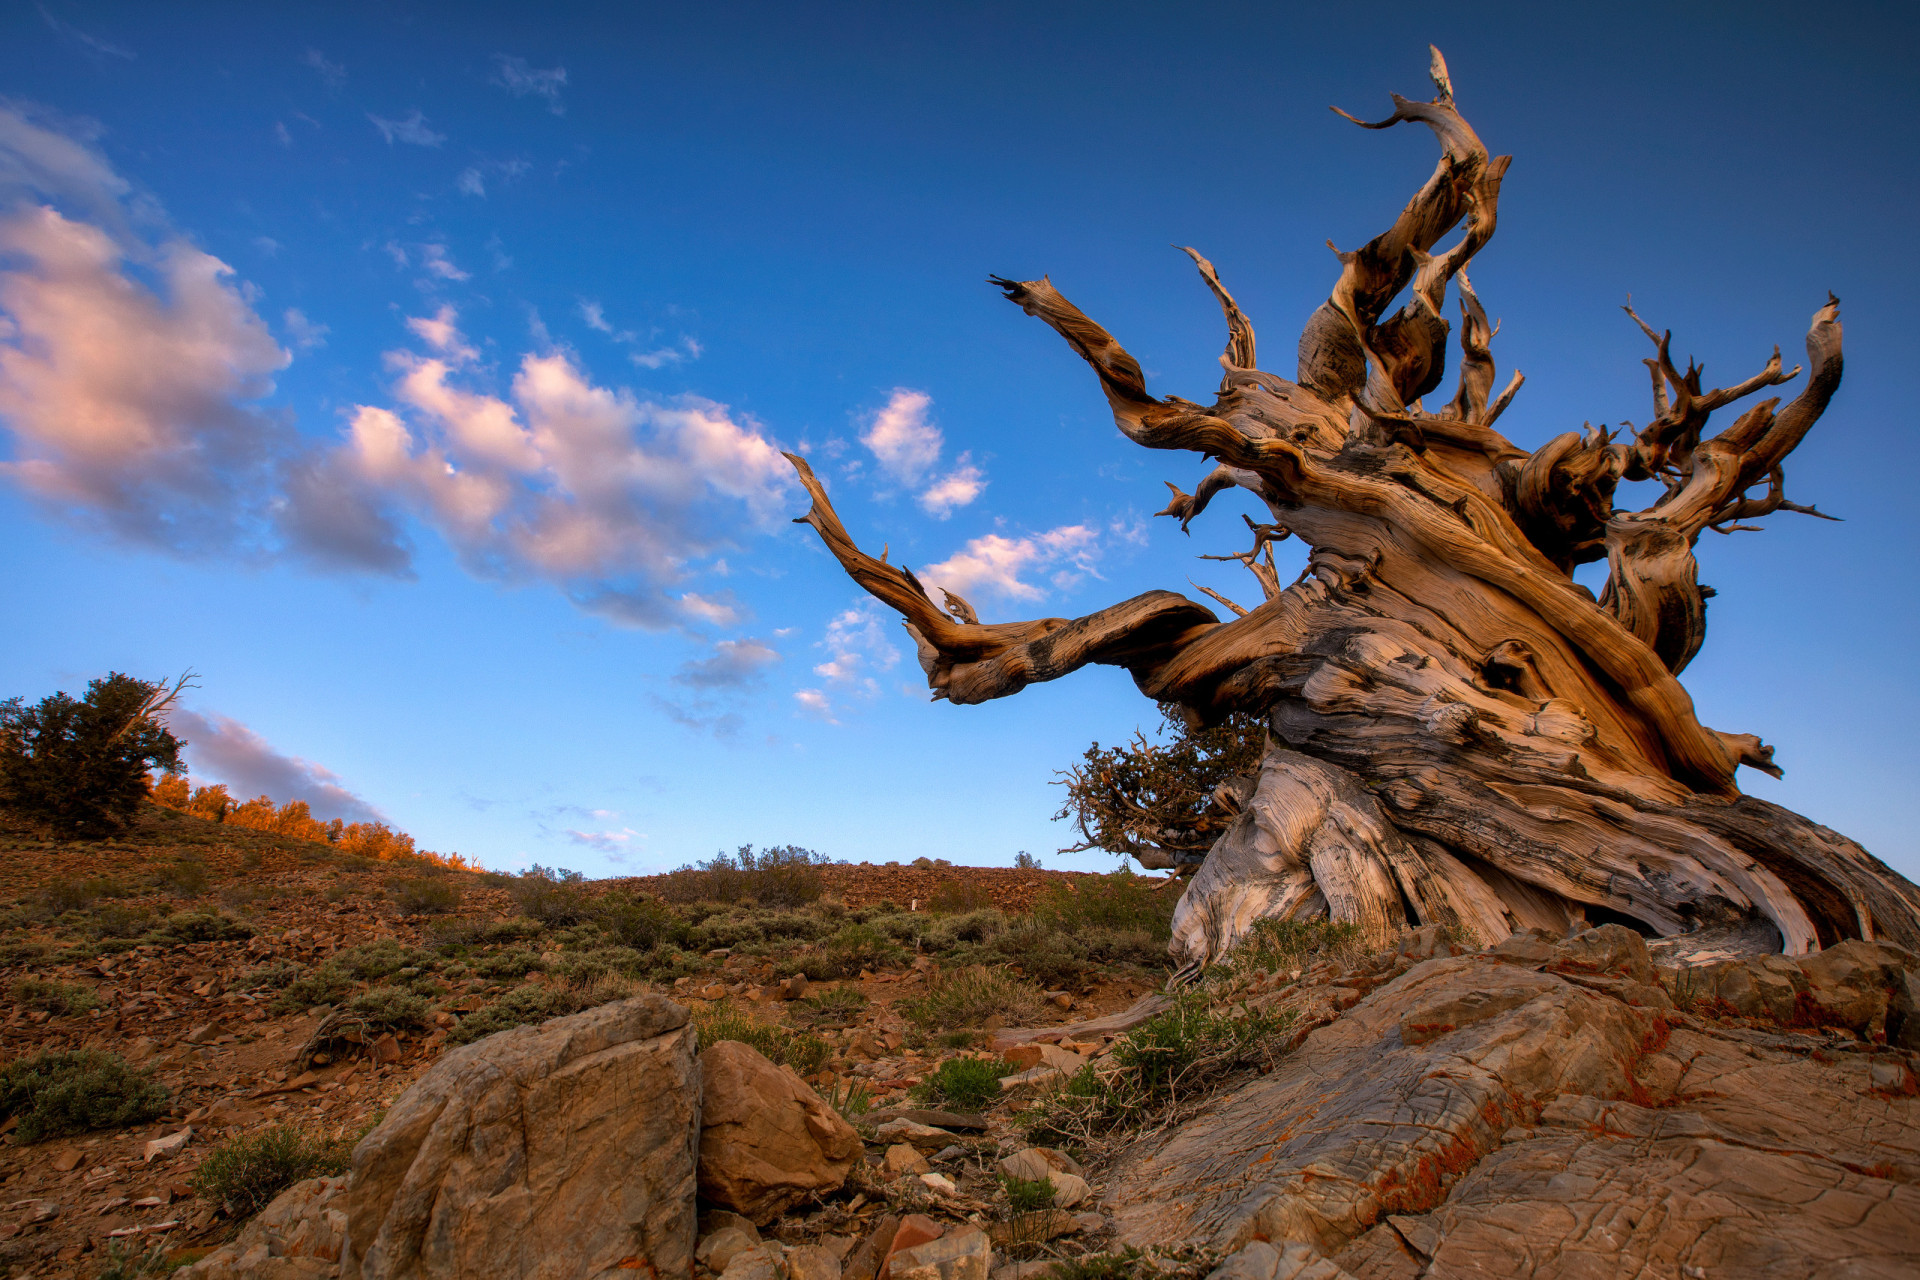 <p>Le pin de Bristlecone (<em>Pinus longaeva</em>) est l'espèce d'arbre la plus ancienne qui existe, avec plus de 5 000 ans d'âge. On le trouve dans les hautes montagnes de Californie, du Nevada et de l'Utah.</p><p><a href="https://www.msn.com/fr-ca/community/channel/vid-7xx8mnucu55yw63we9va2gwr7uihbxwc68fxqp25x6tg4ftibpra?cvid=94631541bc0f4f89bfd59158d696ad7e">Suivez-nous et accédez tous les jours à du contenu exclusif</a></p>